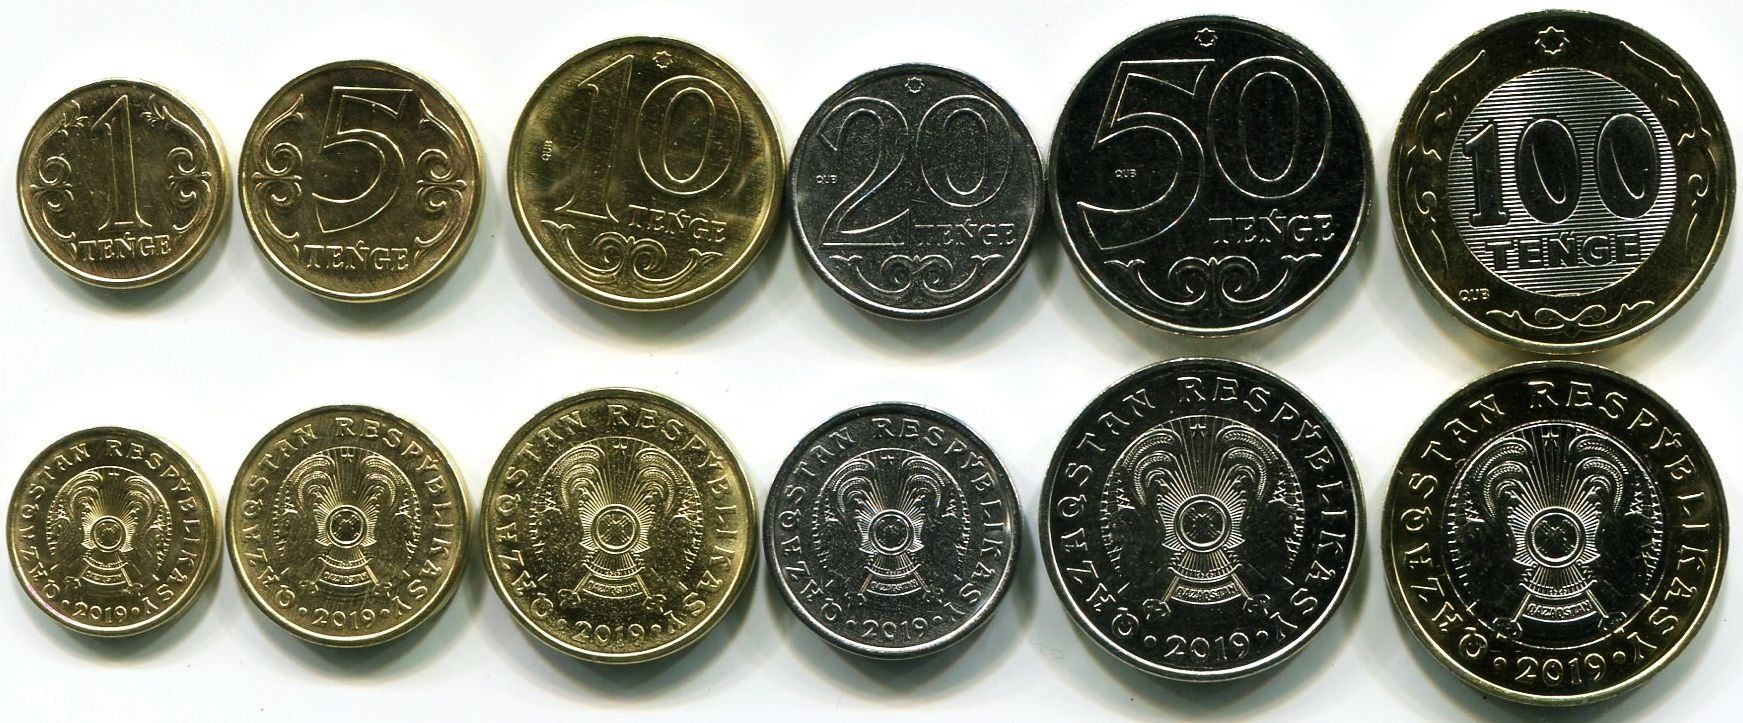 Тенге монеты 2019